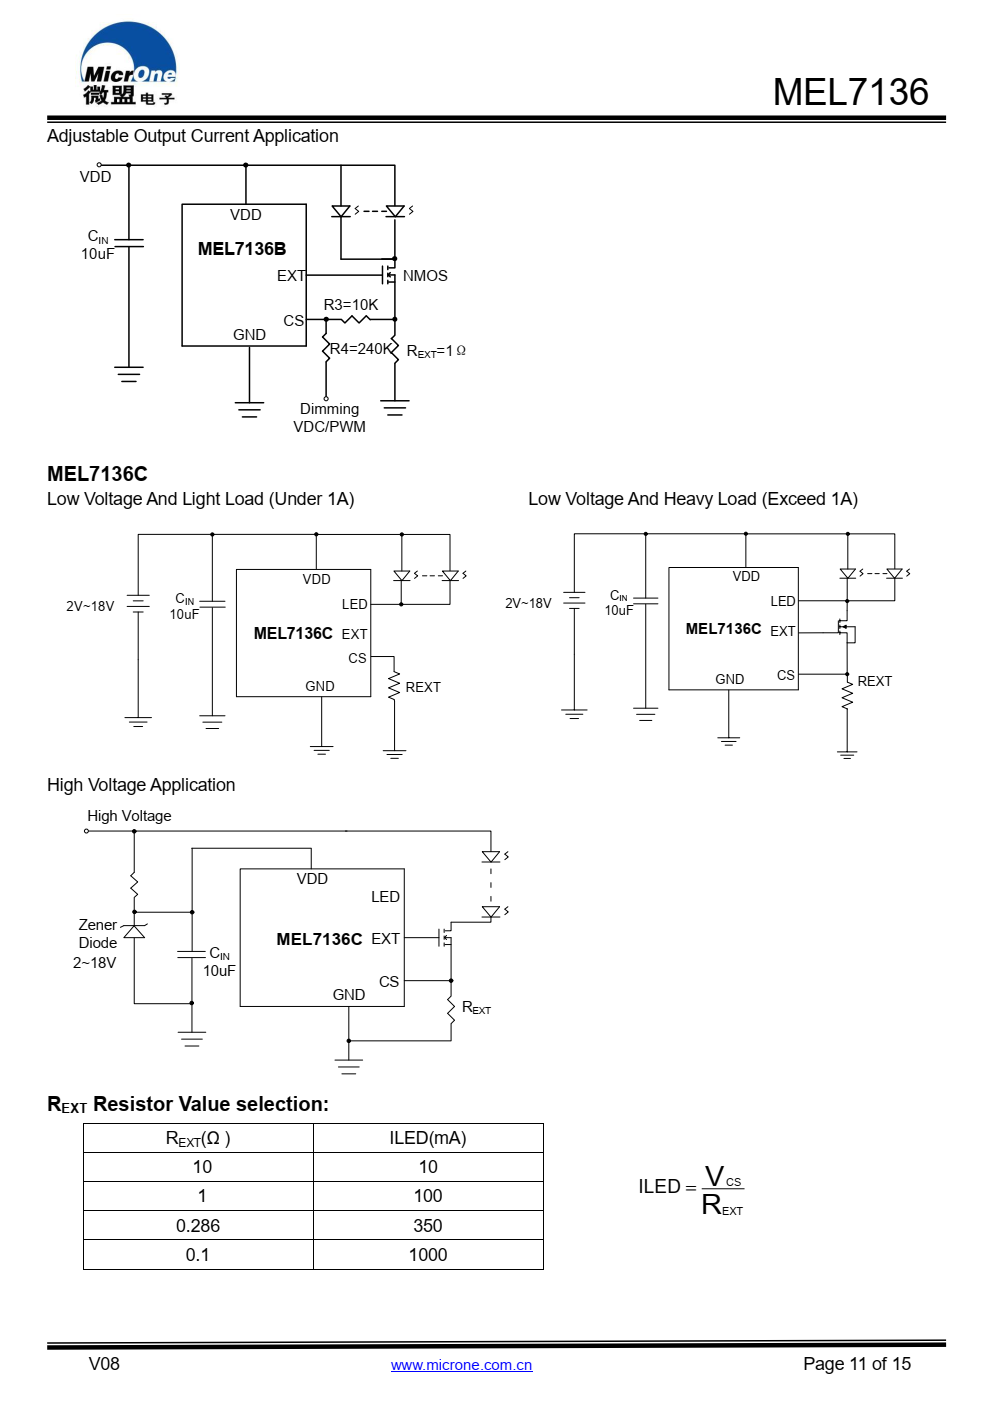 MEL7136A是一个恒定电流调节器，用于  低静态电流和低压差驱动LED